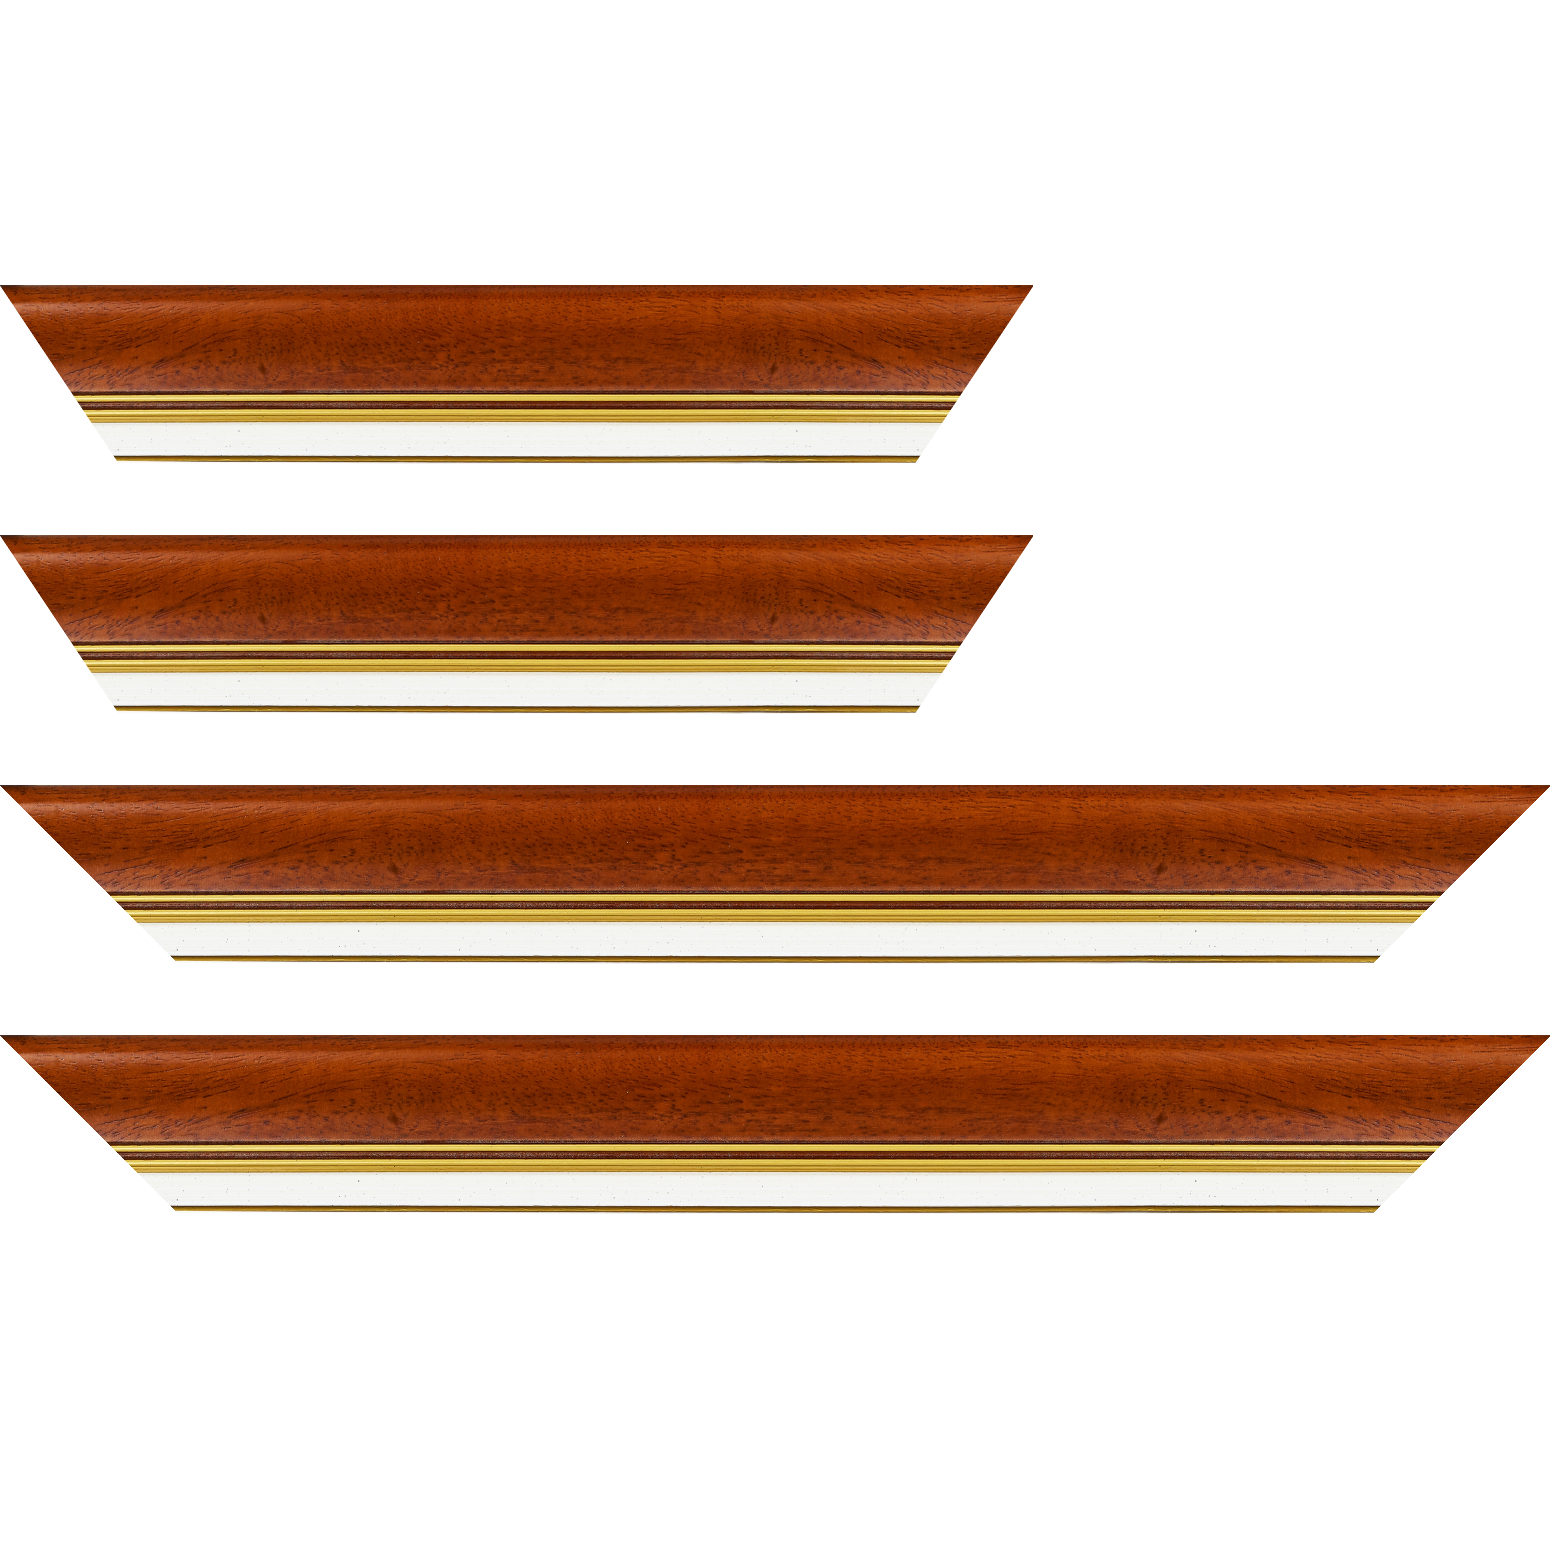 Baguette bois profil incurvé largeur 5.7cm de couleur marron ton bois marie louise blanche mouchetée filet or intégré - 24x30